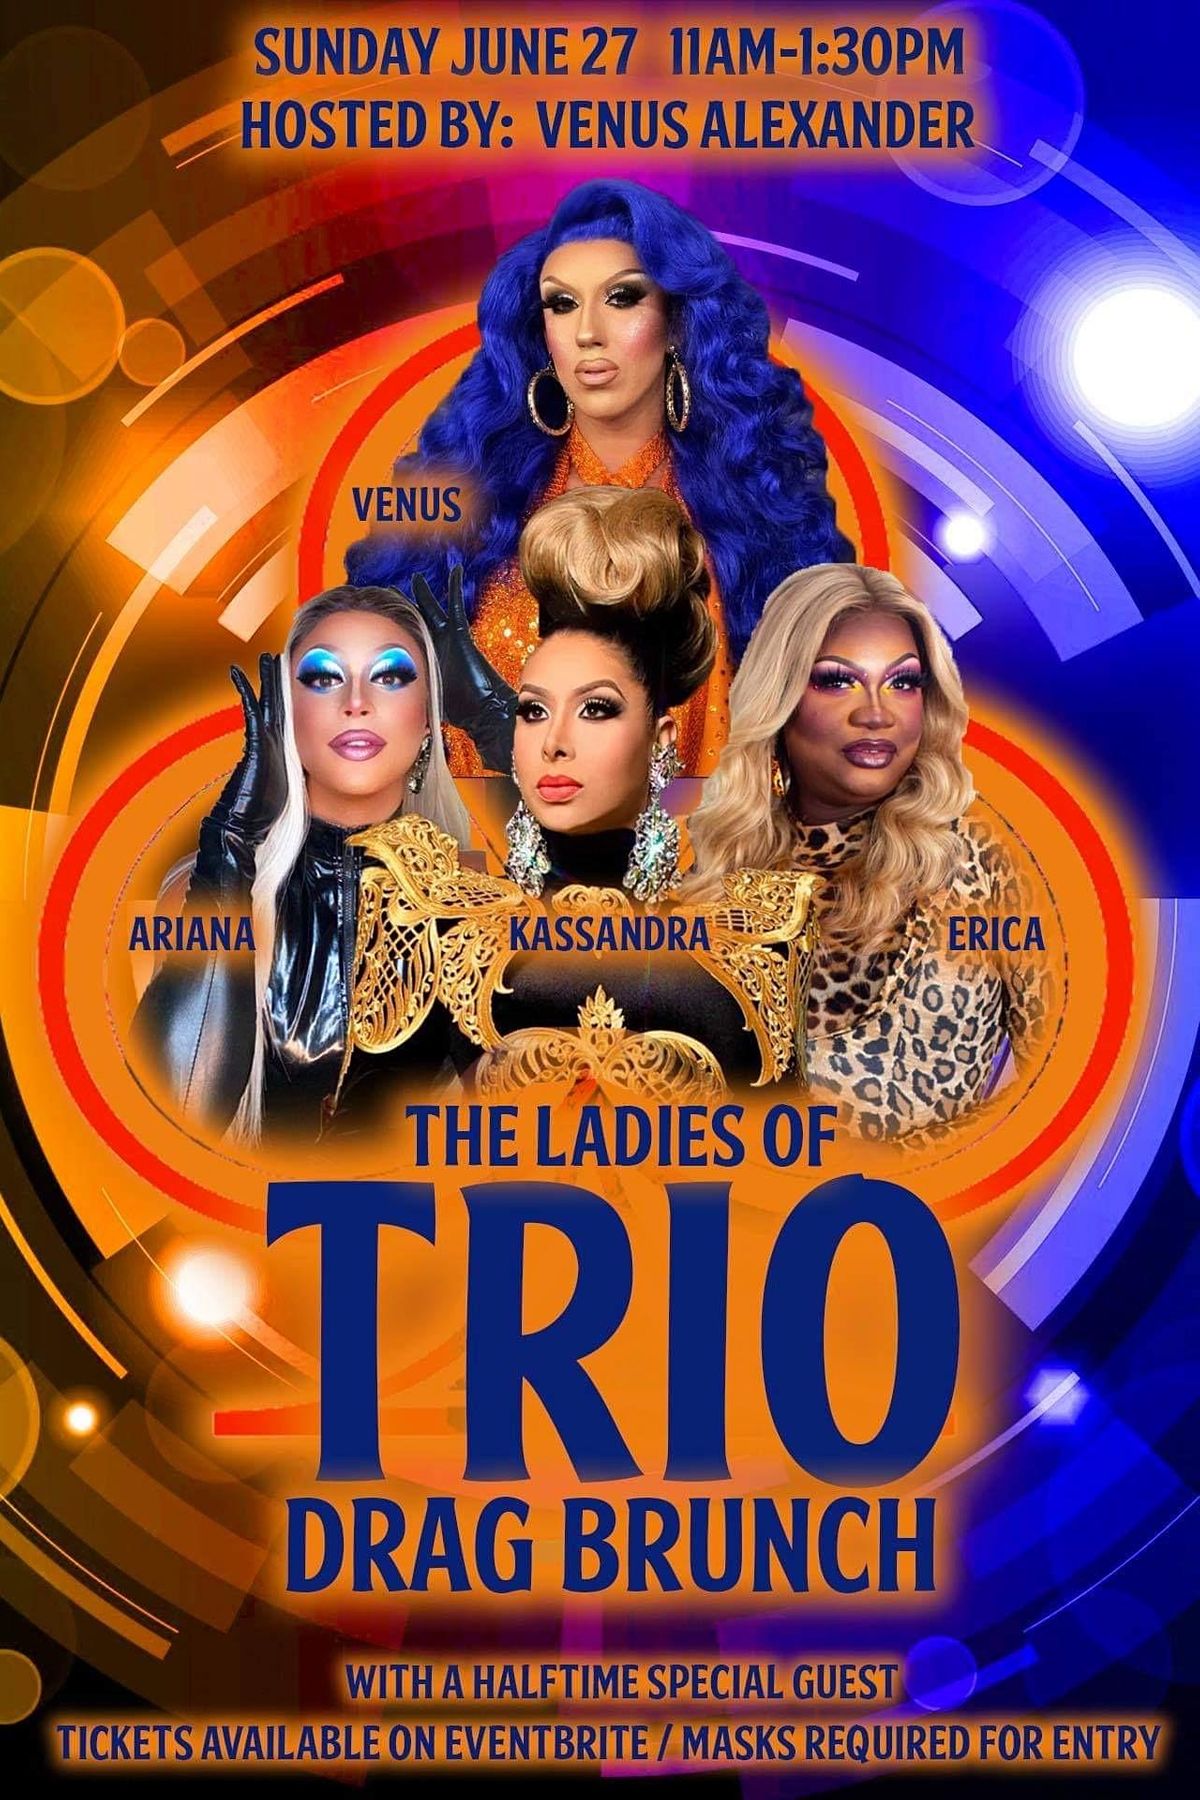 The Ladies of Trio Drag Brunch